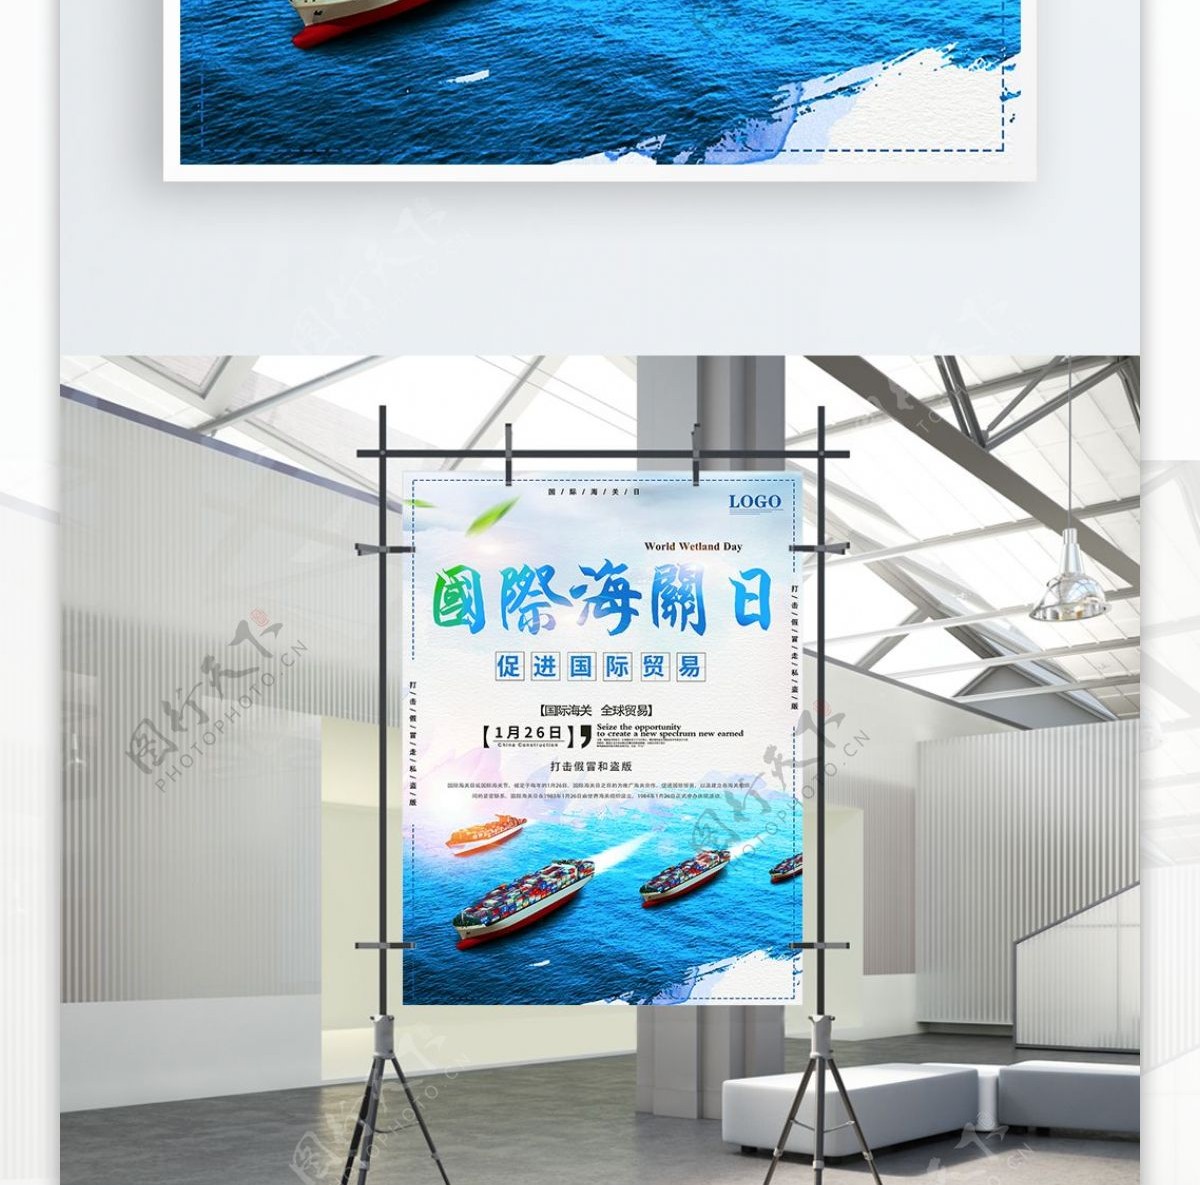 简约蓝色国际海关日海报设计PSD模板